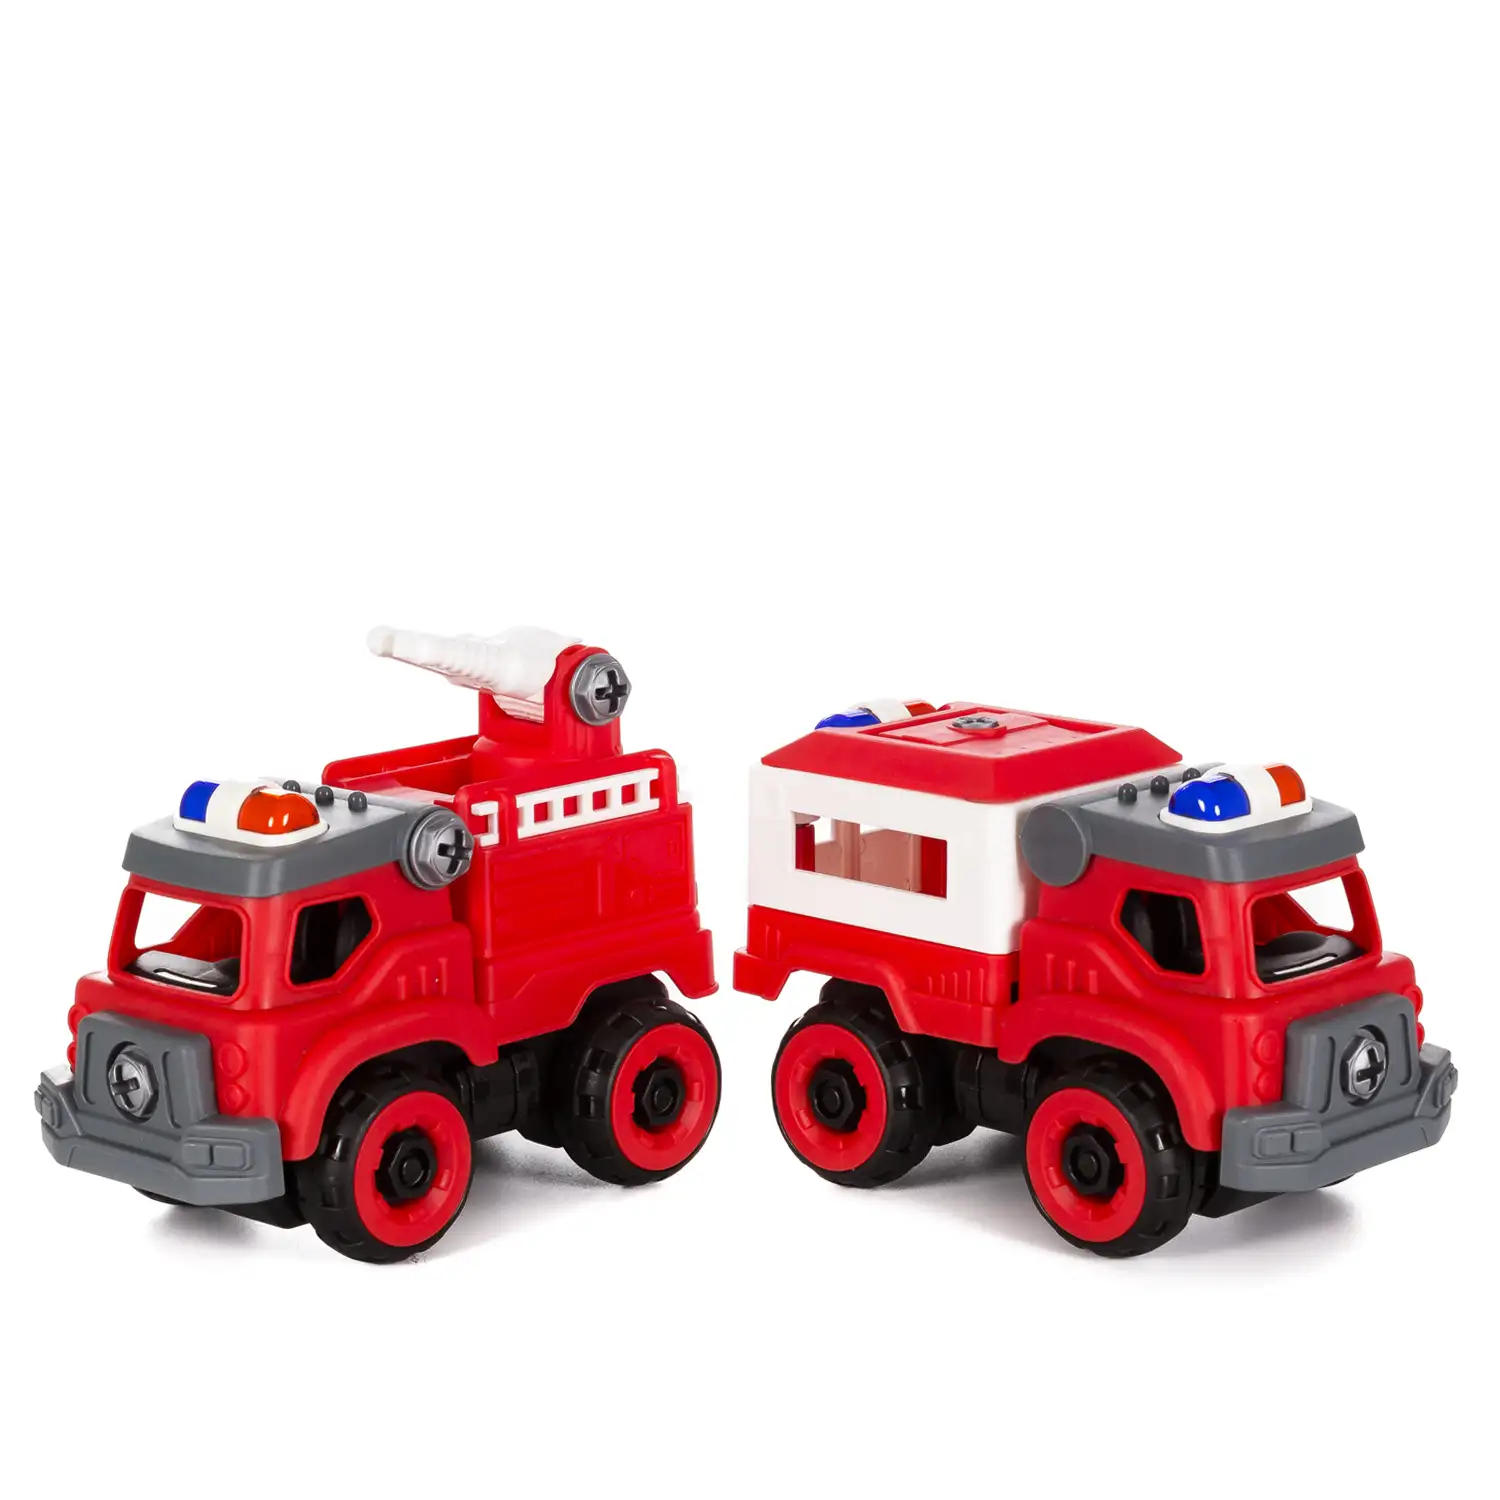 Camiones de bomberos para construir, 128 piezas. Monta 4 modelos a la vez. Incluye herramientas especiales para su montaje, diseñadas para niños.